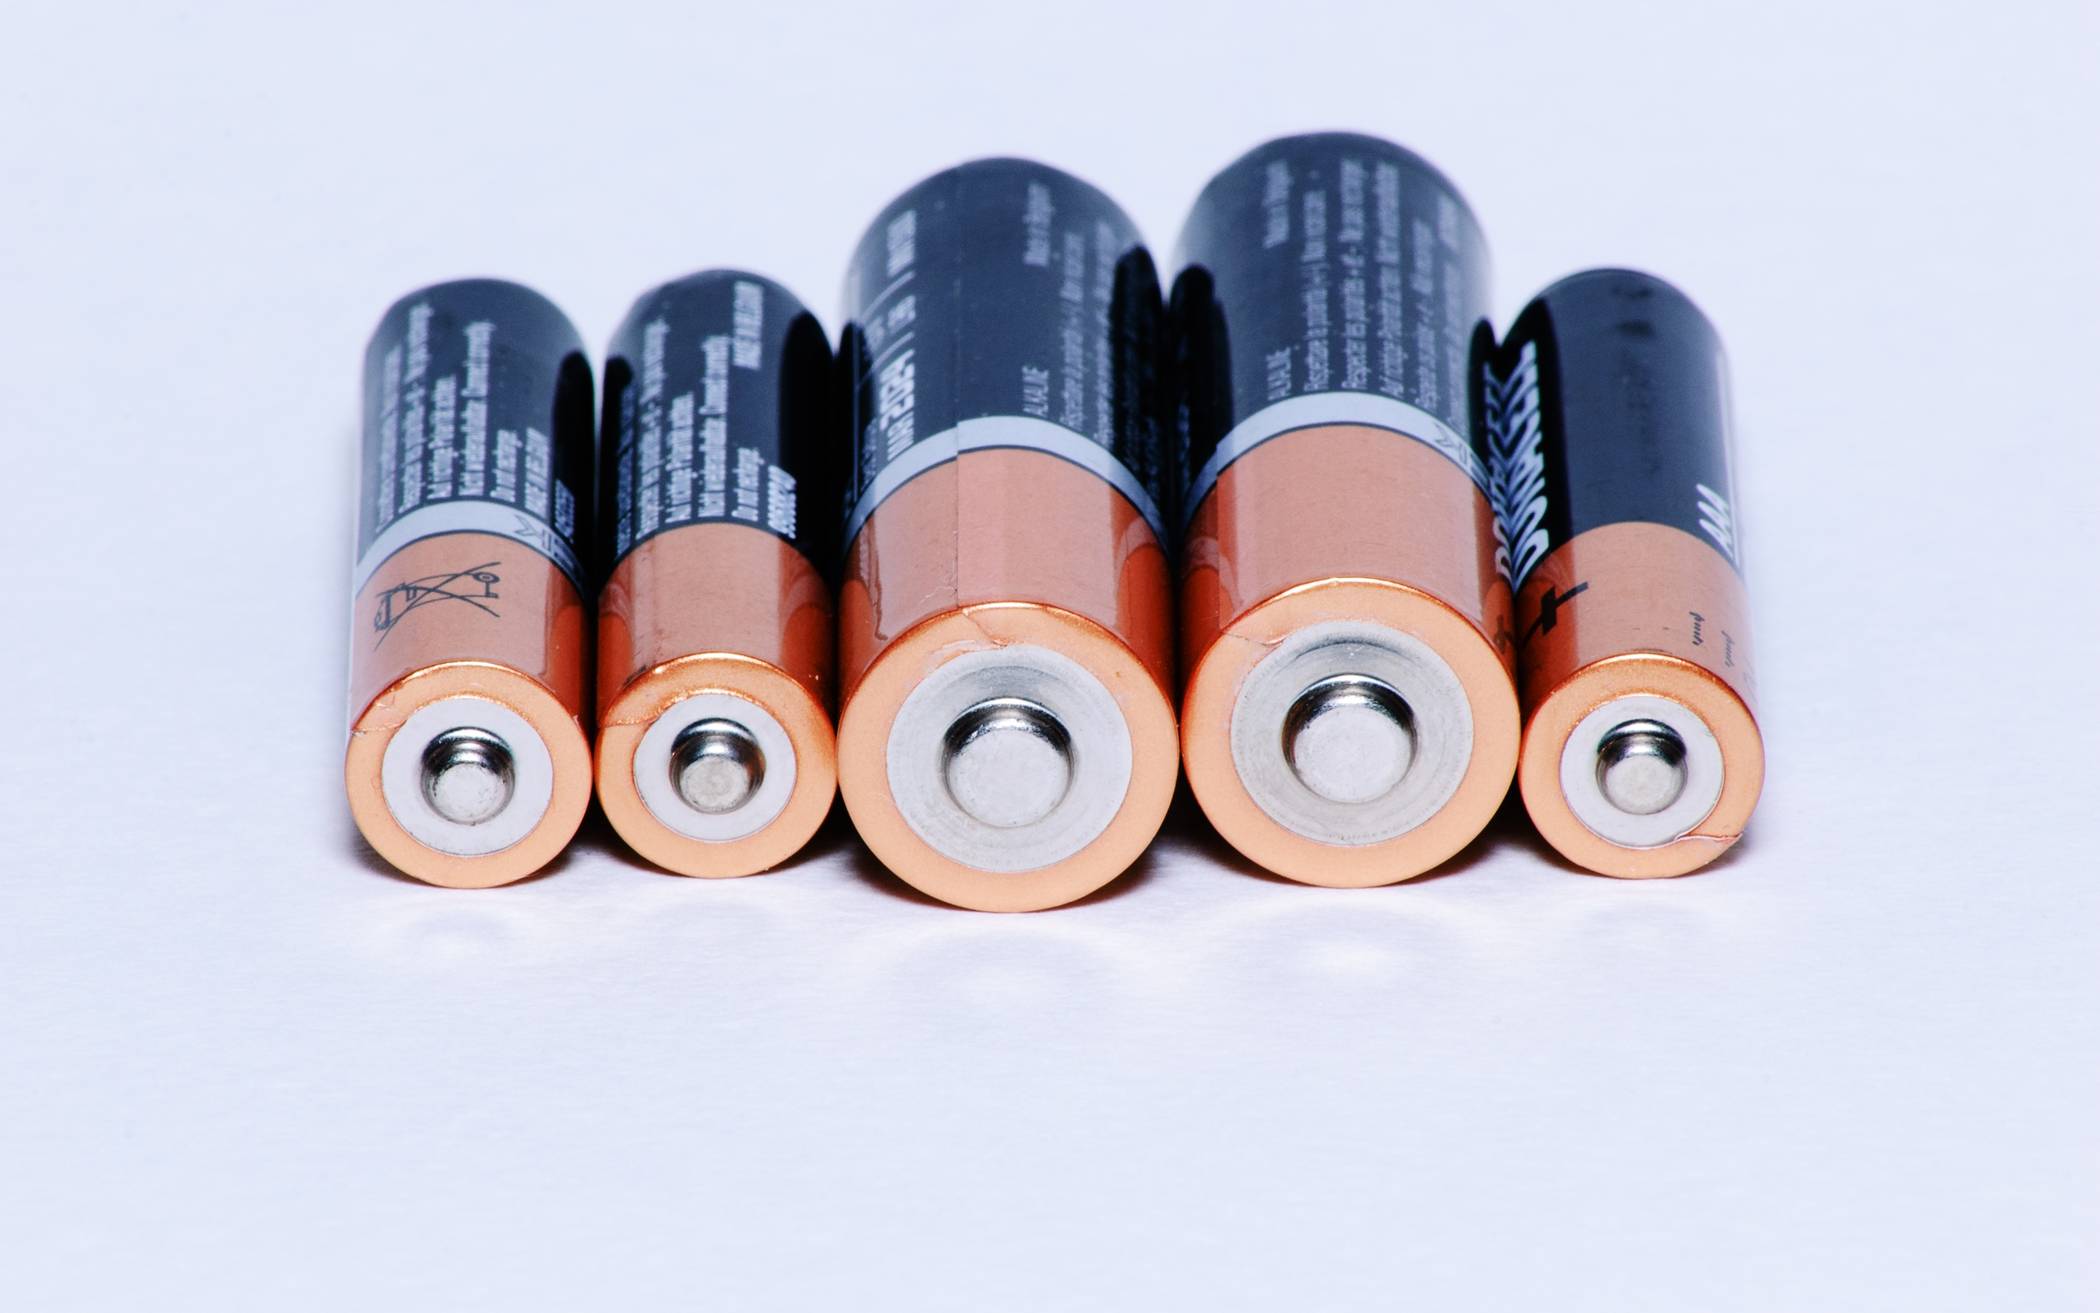 Batterien richtig recyclen und entsorgen